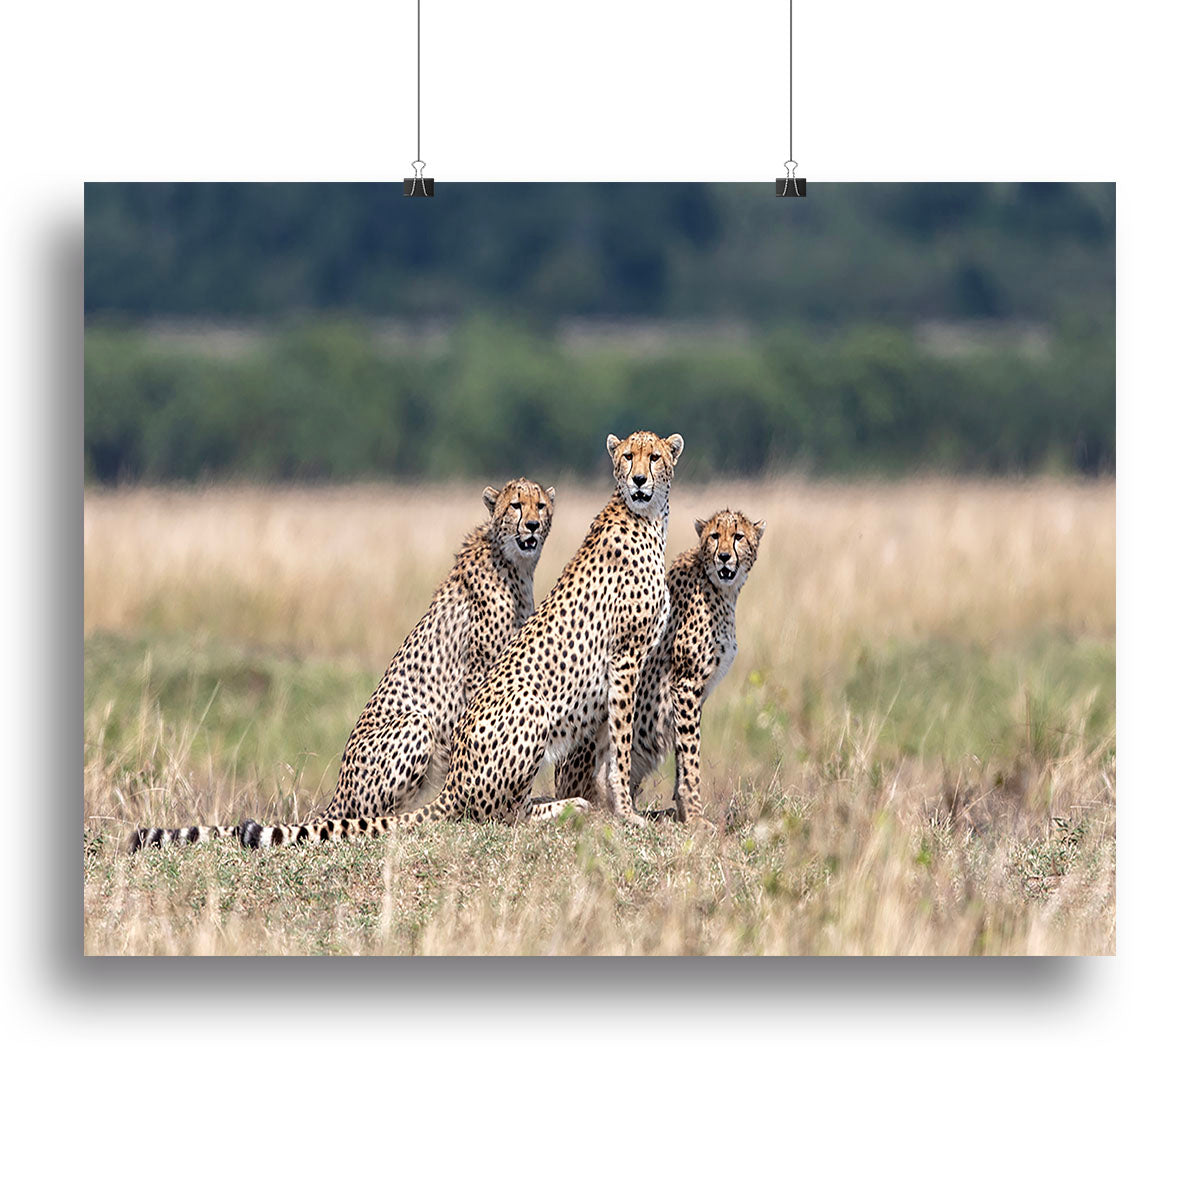 Three Cheetahs Canvas Print or Poster - Canvas Art Rocks - 2